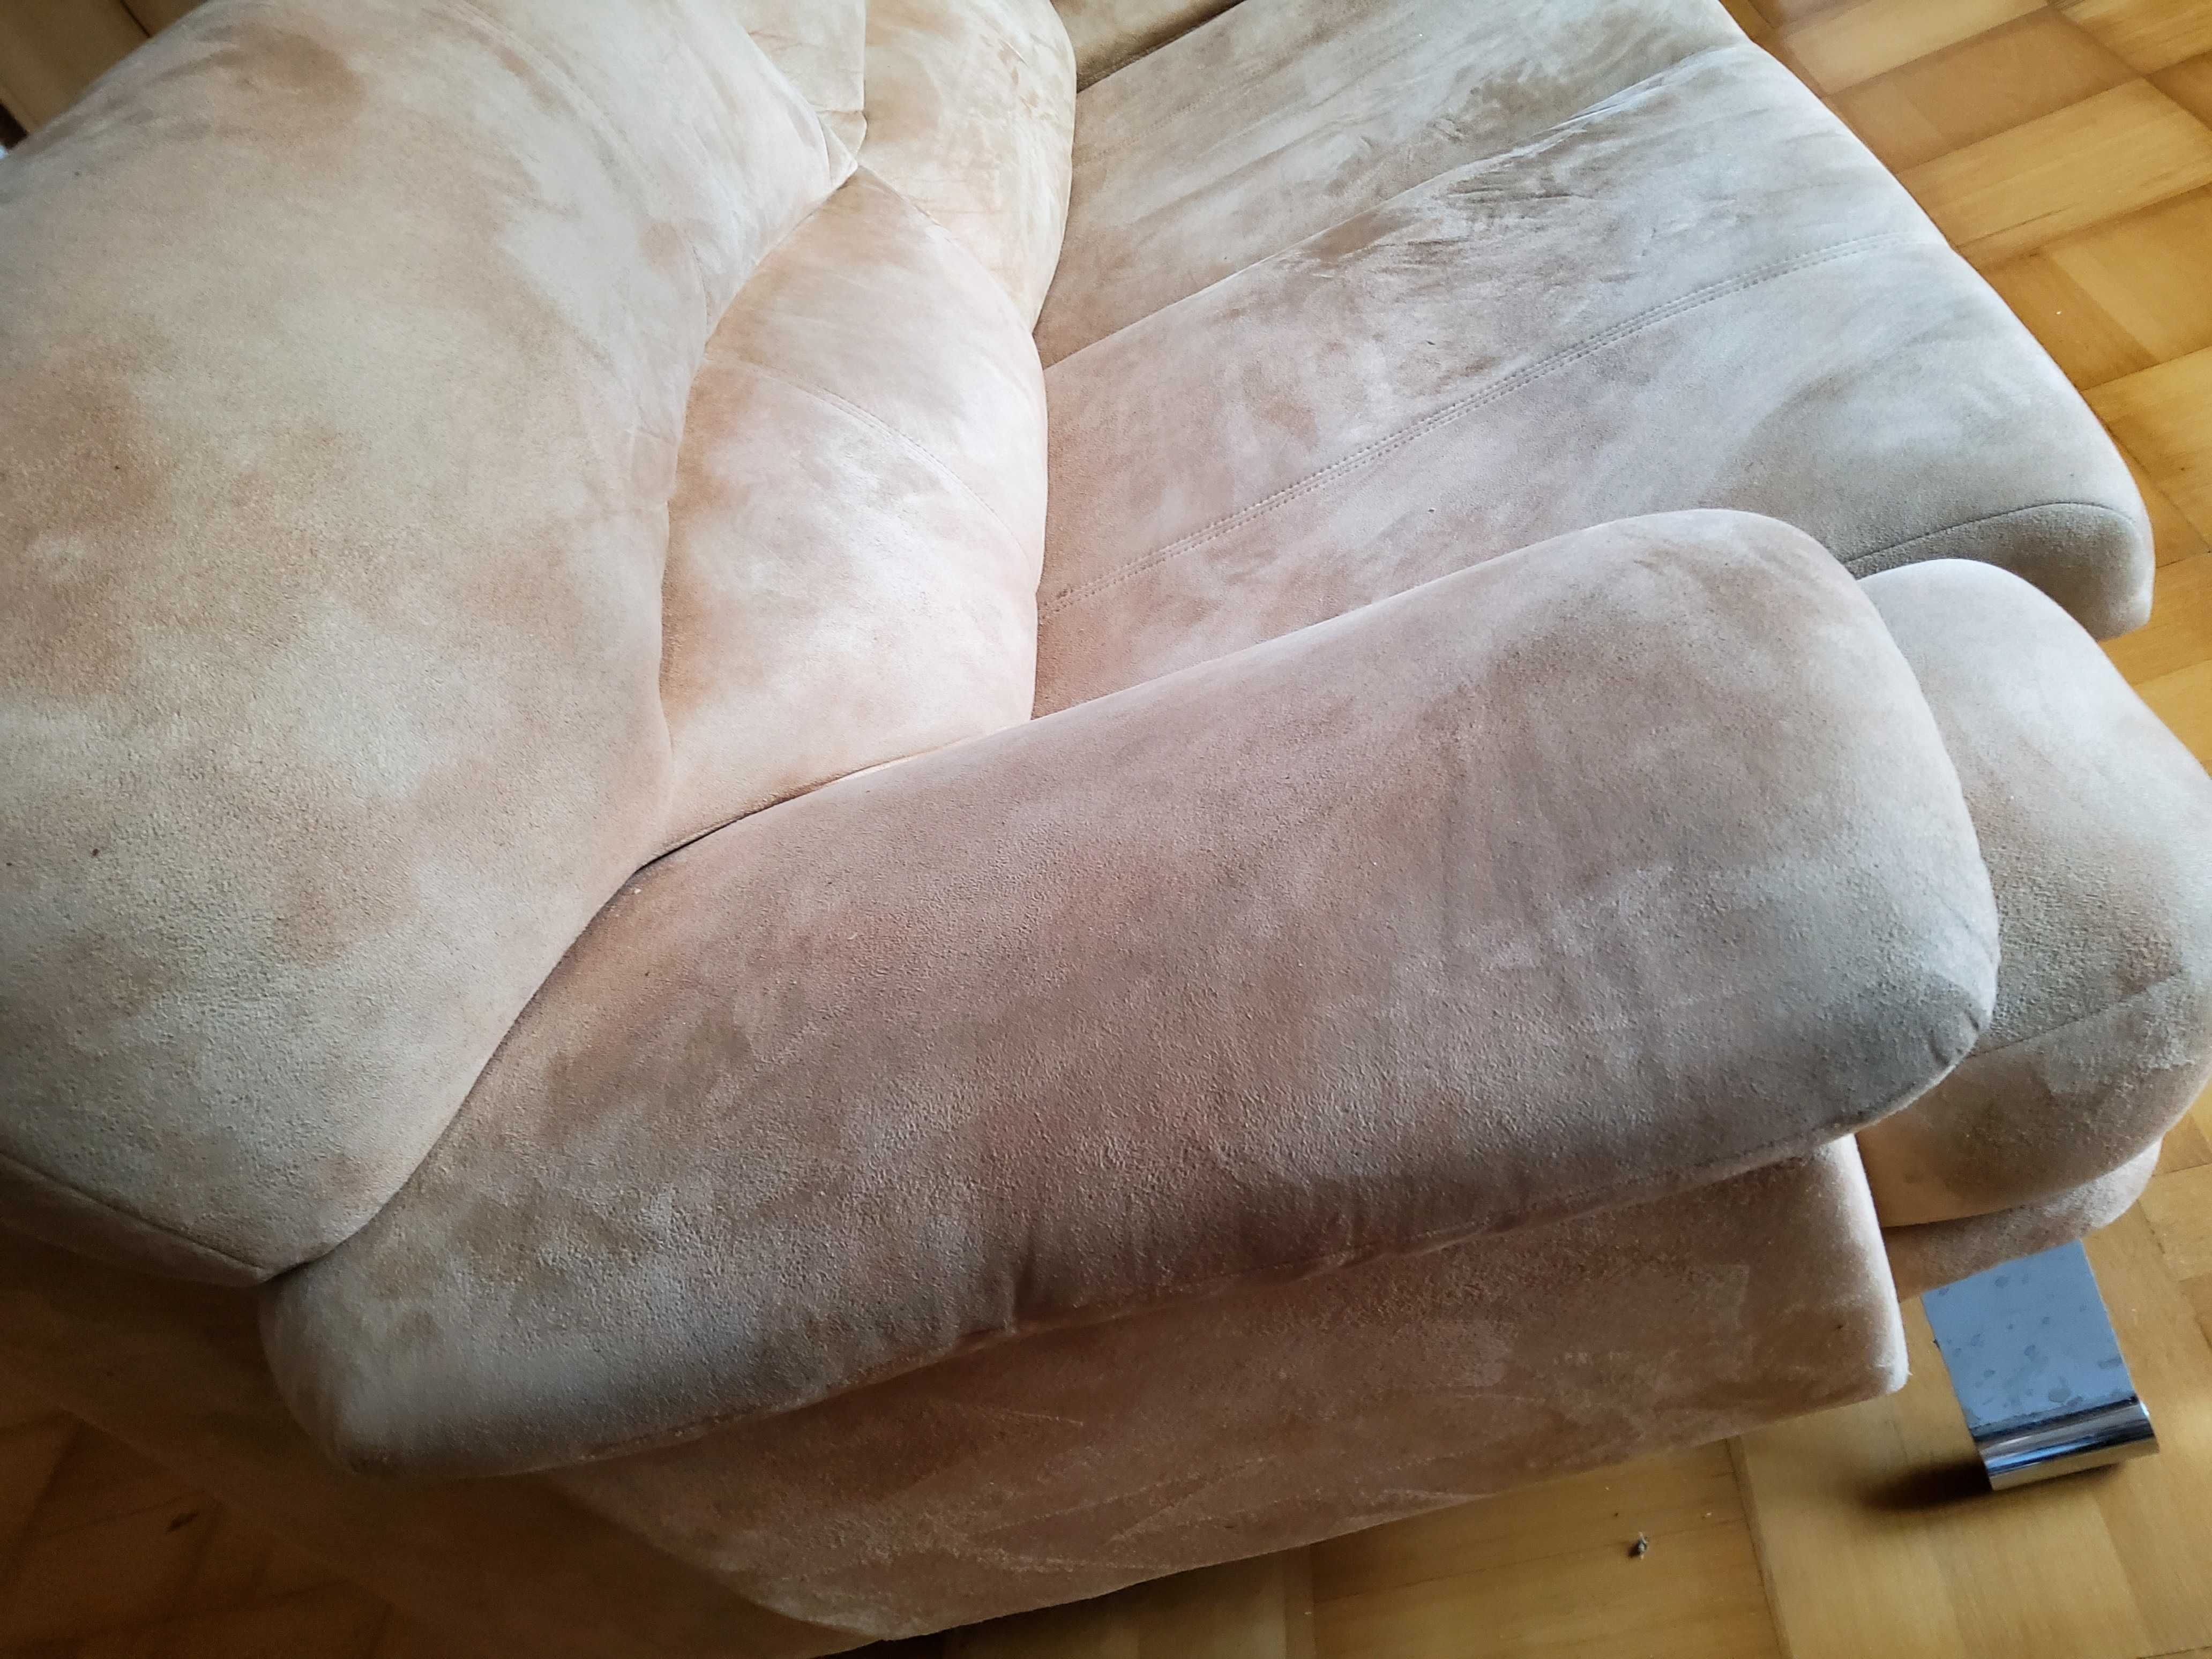 Komplet wypoczynkowy sofa 2 fotele